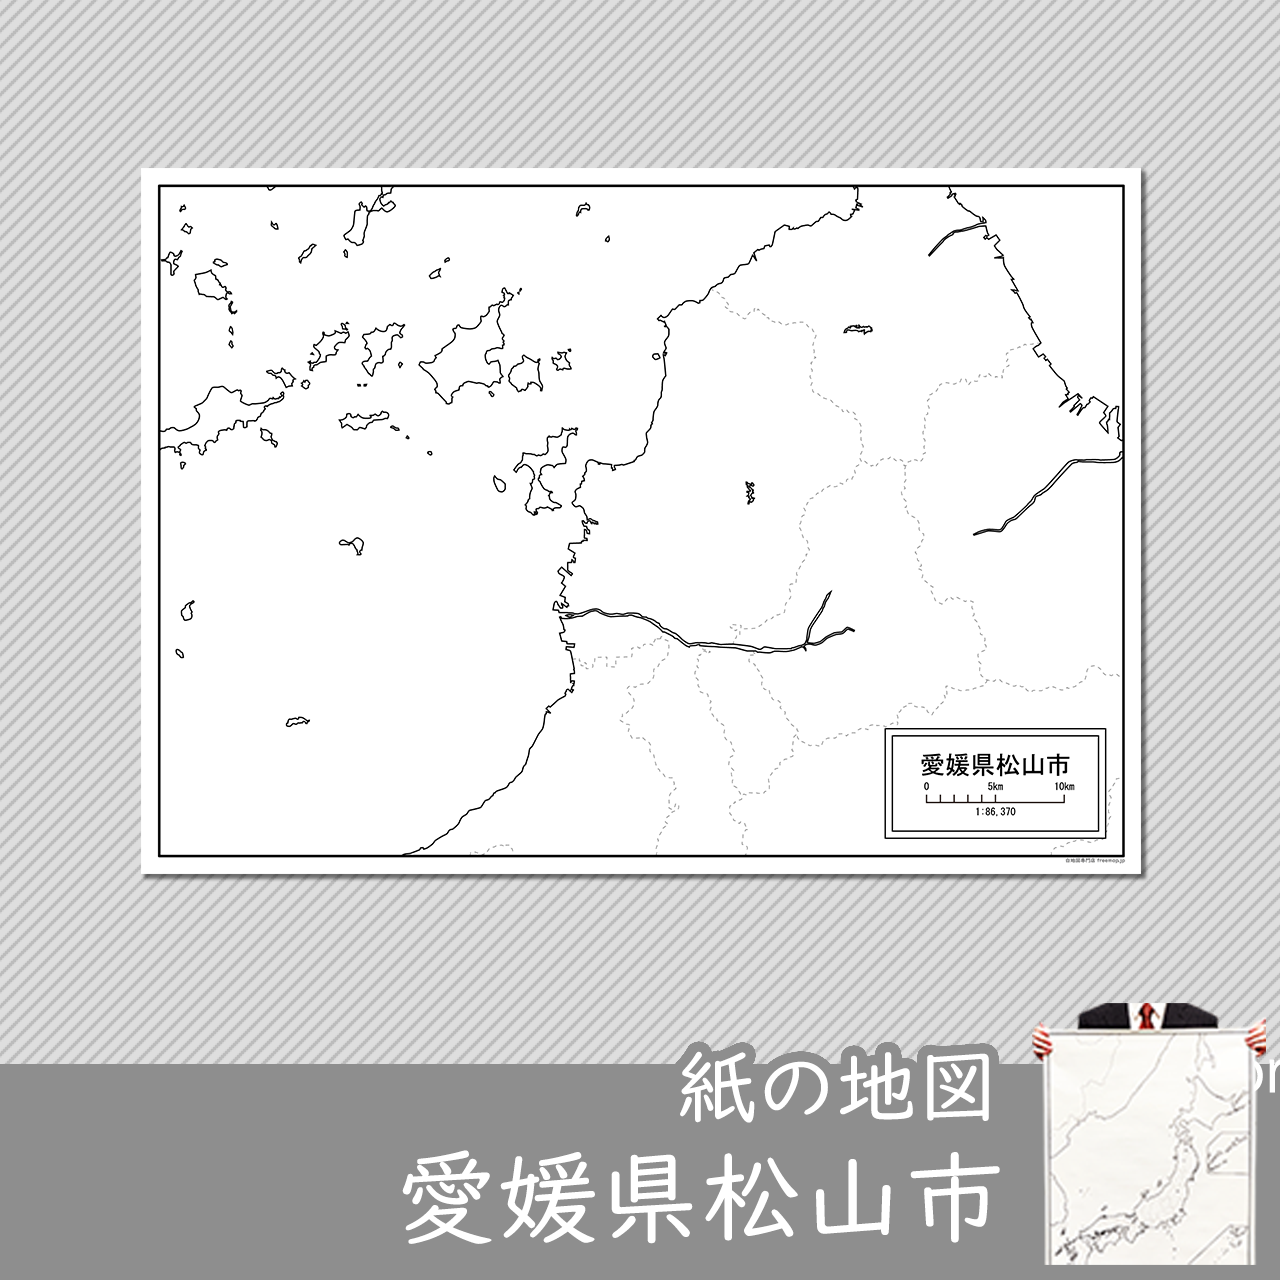 松山市の紙の白地図のサムネイル